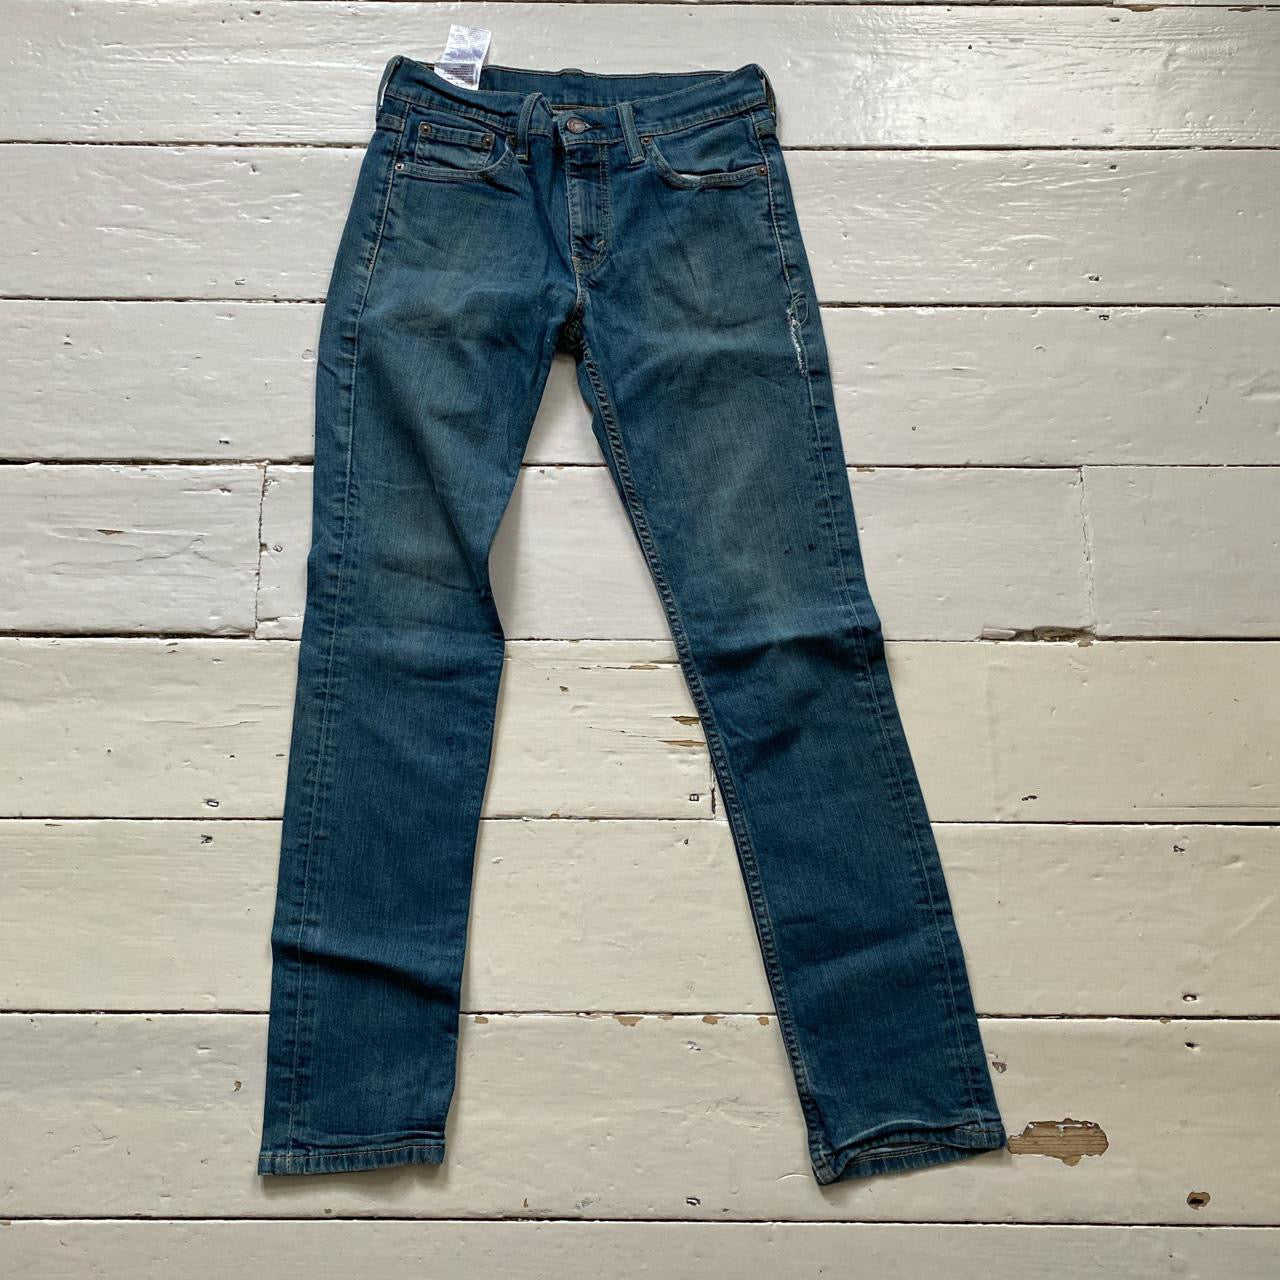 Levis 511 Blue Jeans (30/30)